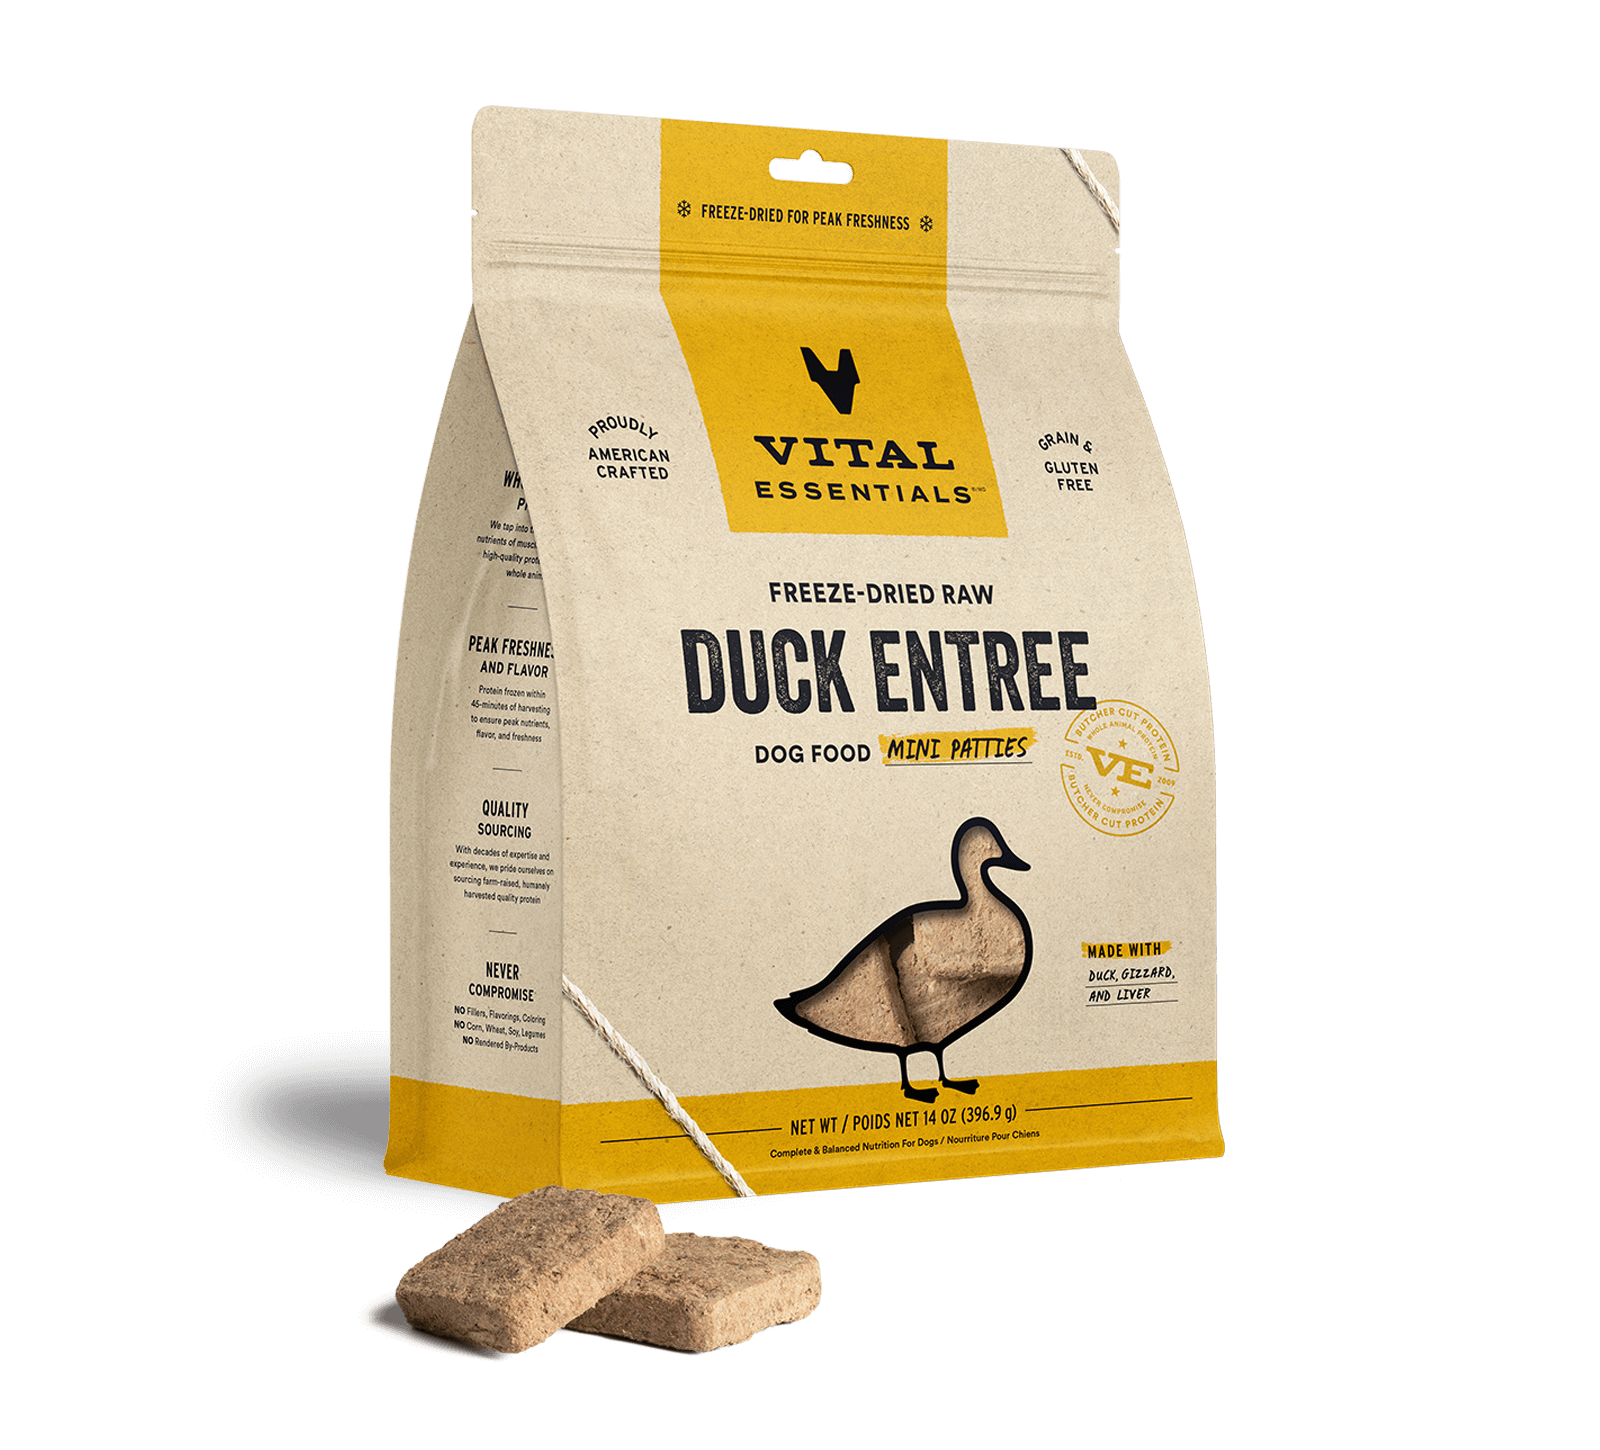 Vital Essentials Duck Entree Mini Patties Freeze-Dried Raw Dog Food